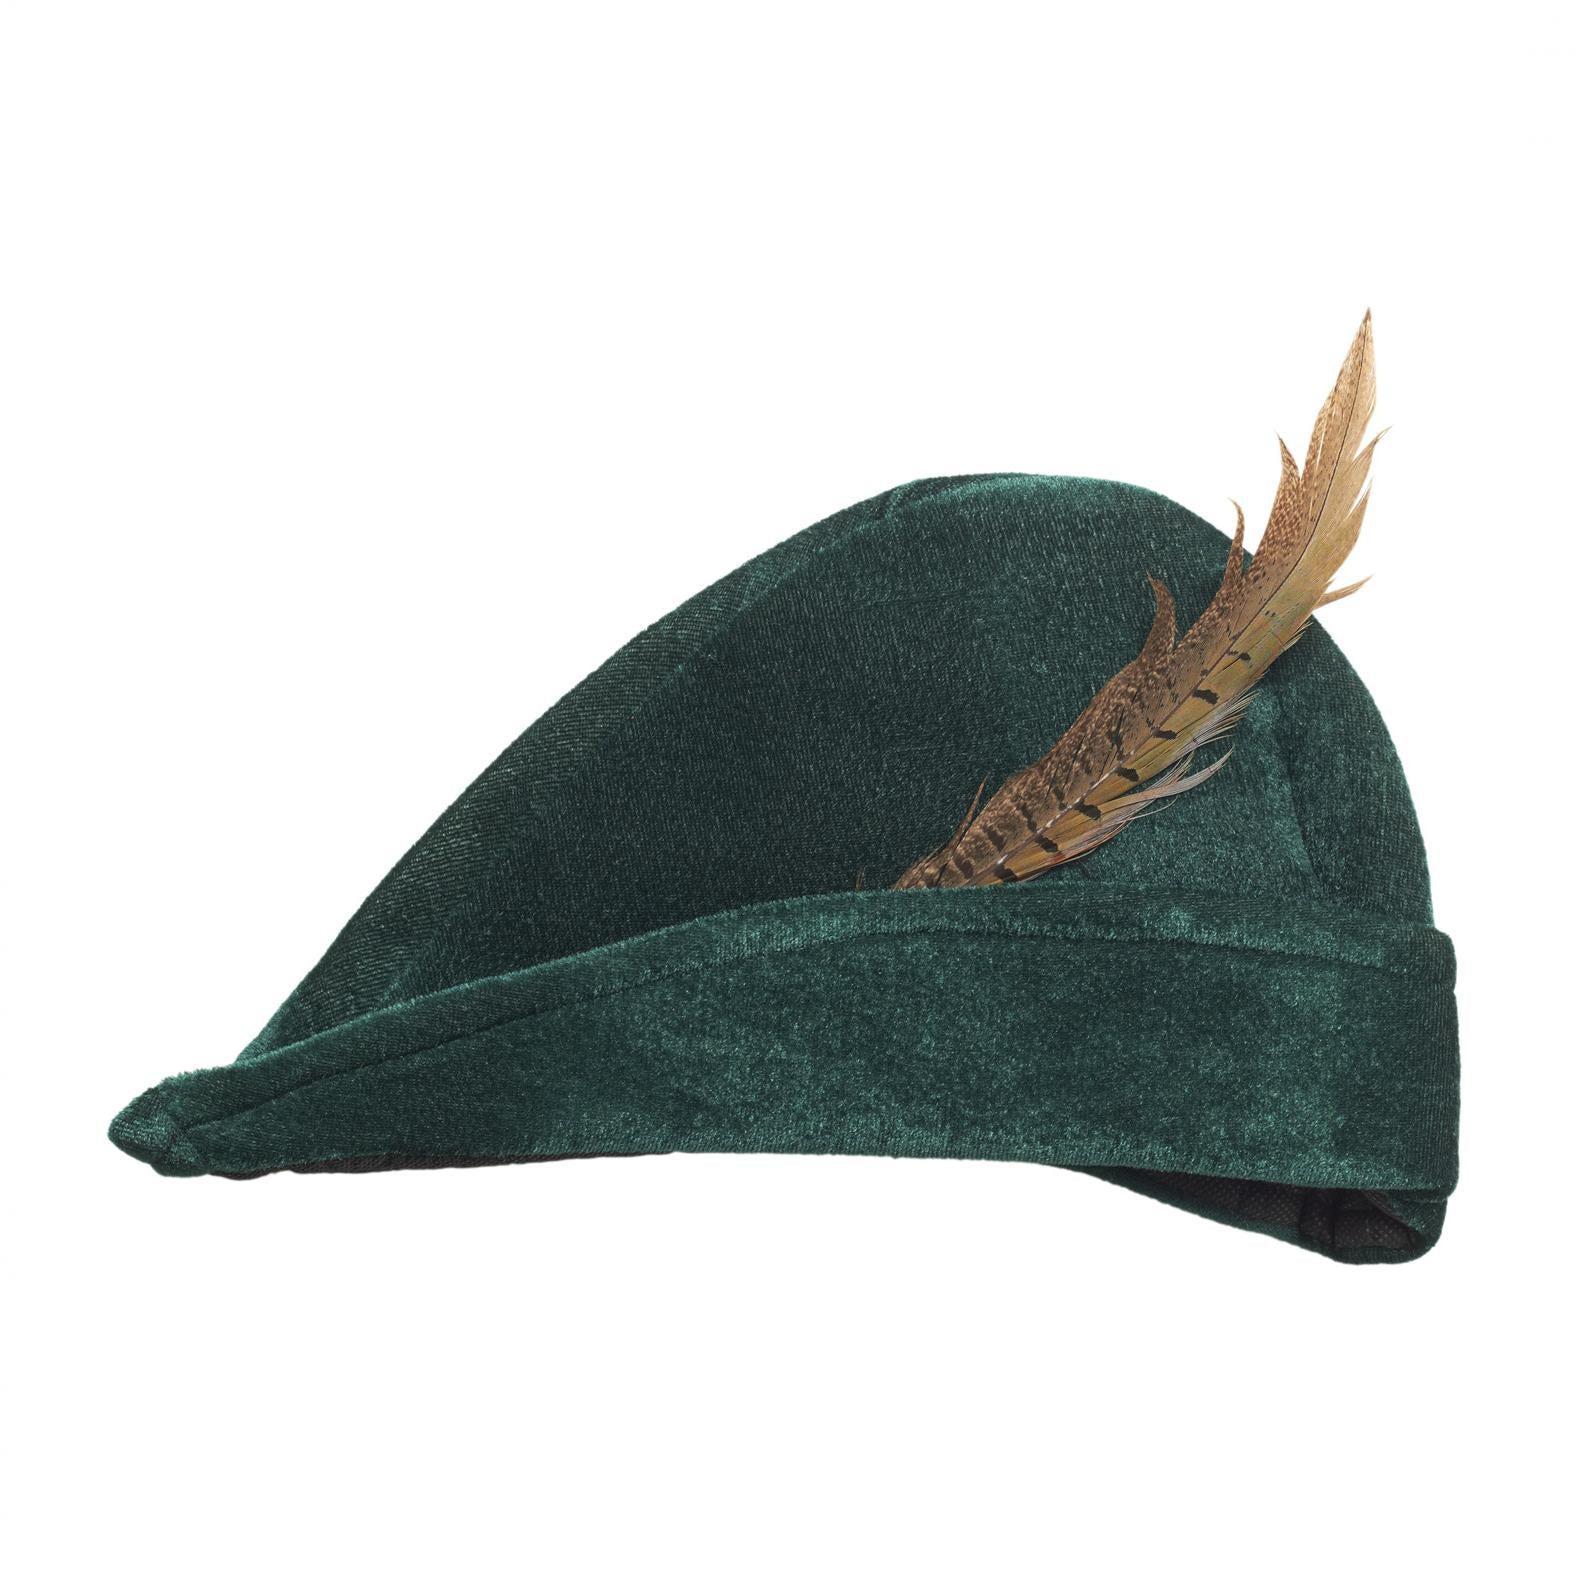 widmann cappello robin hood